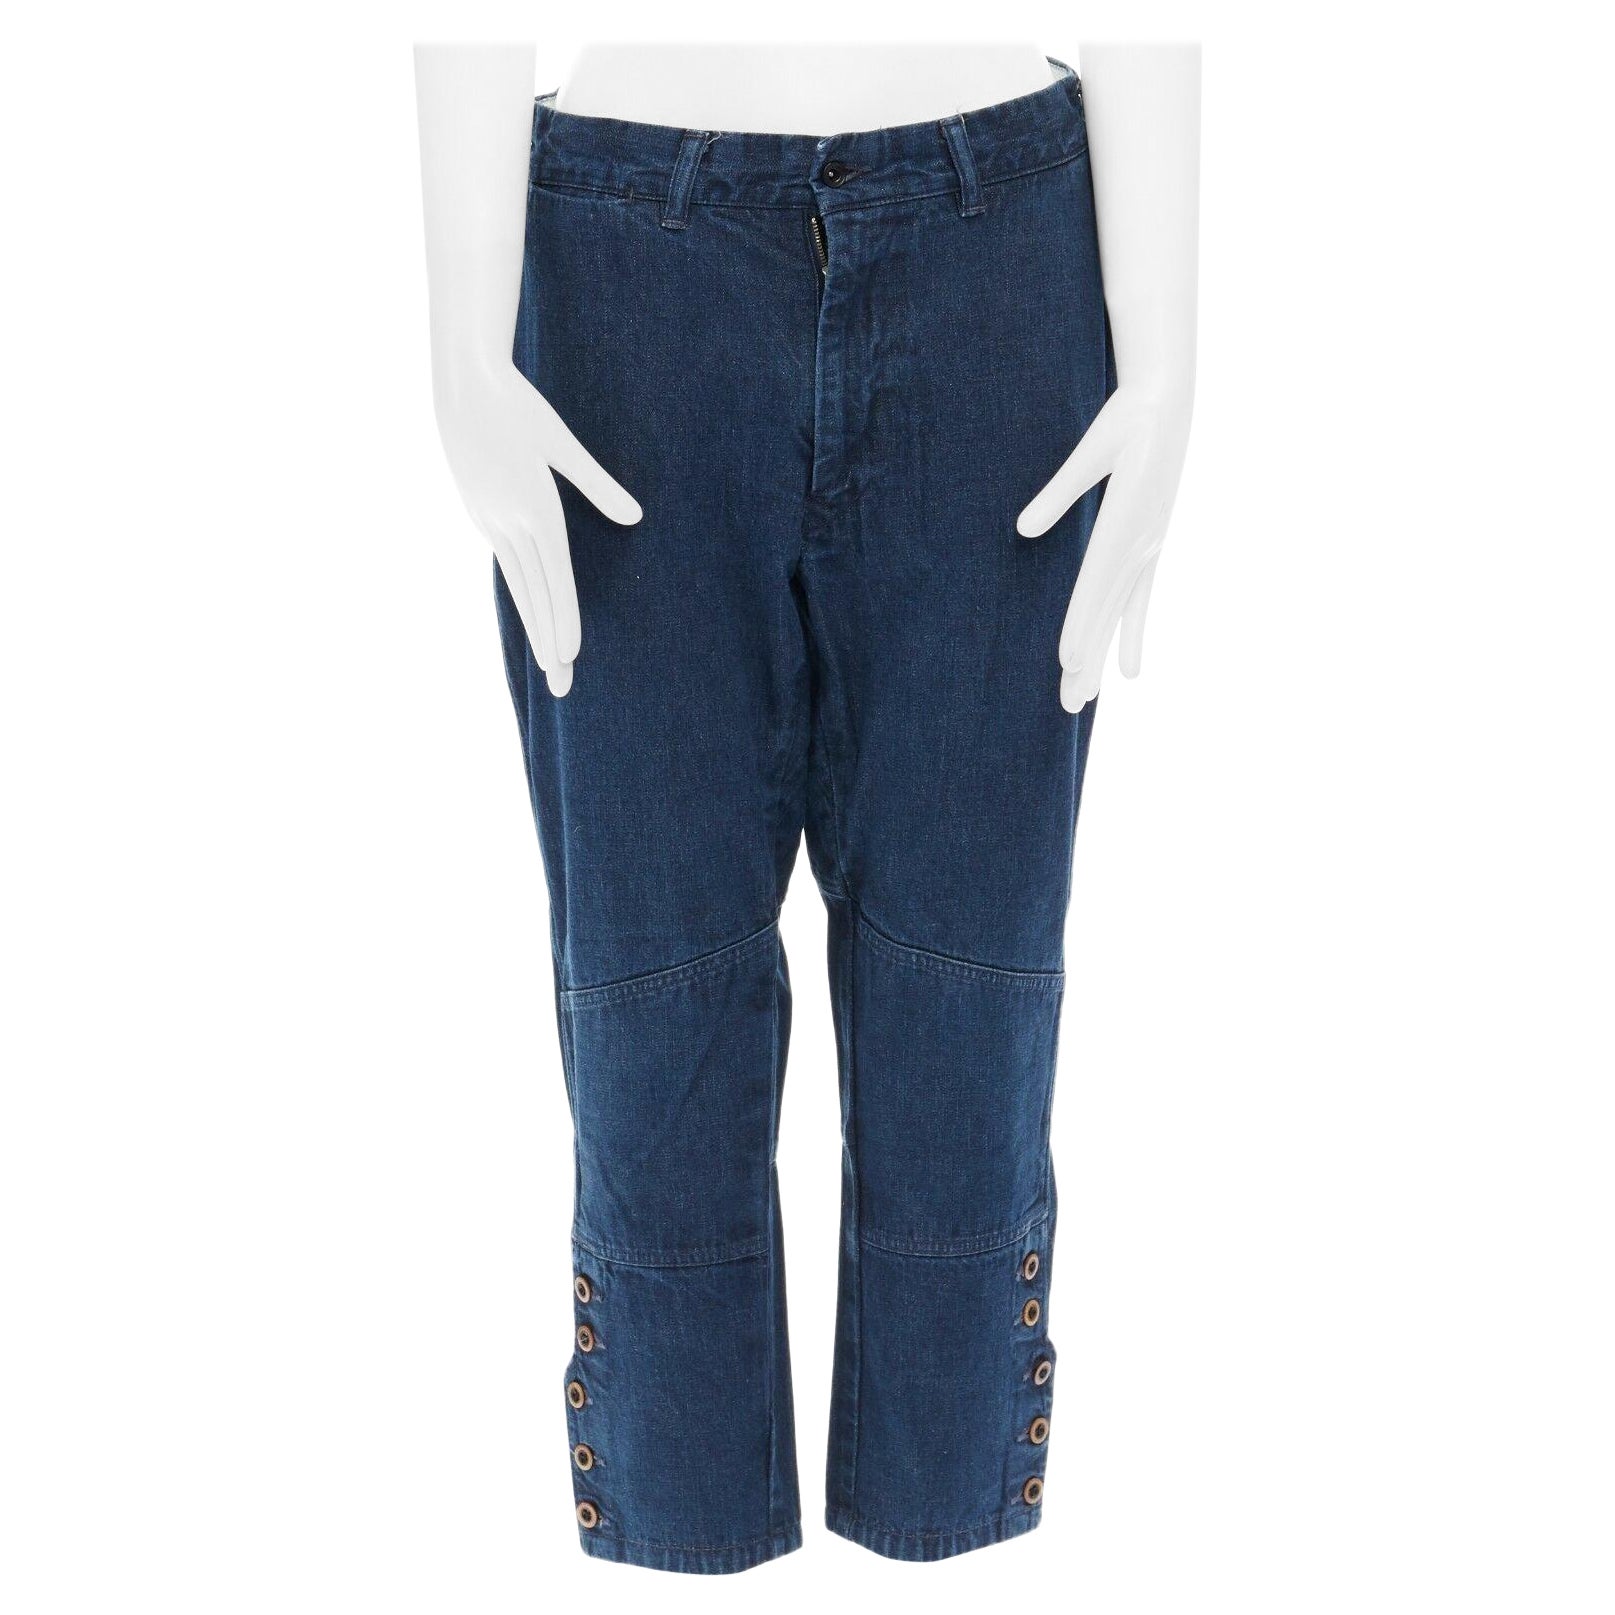 Pantalon capri court Bakkurii en jean bleu teinté indigo avec ourlet à boutons JP1 45R 45RPM